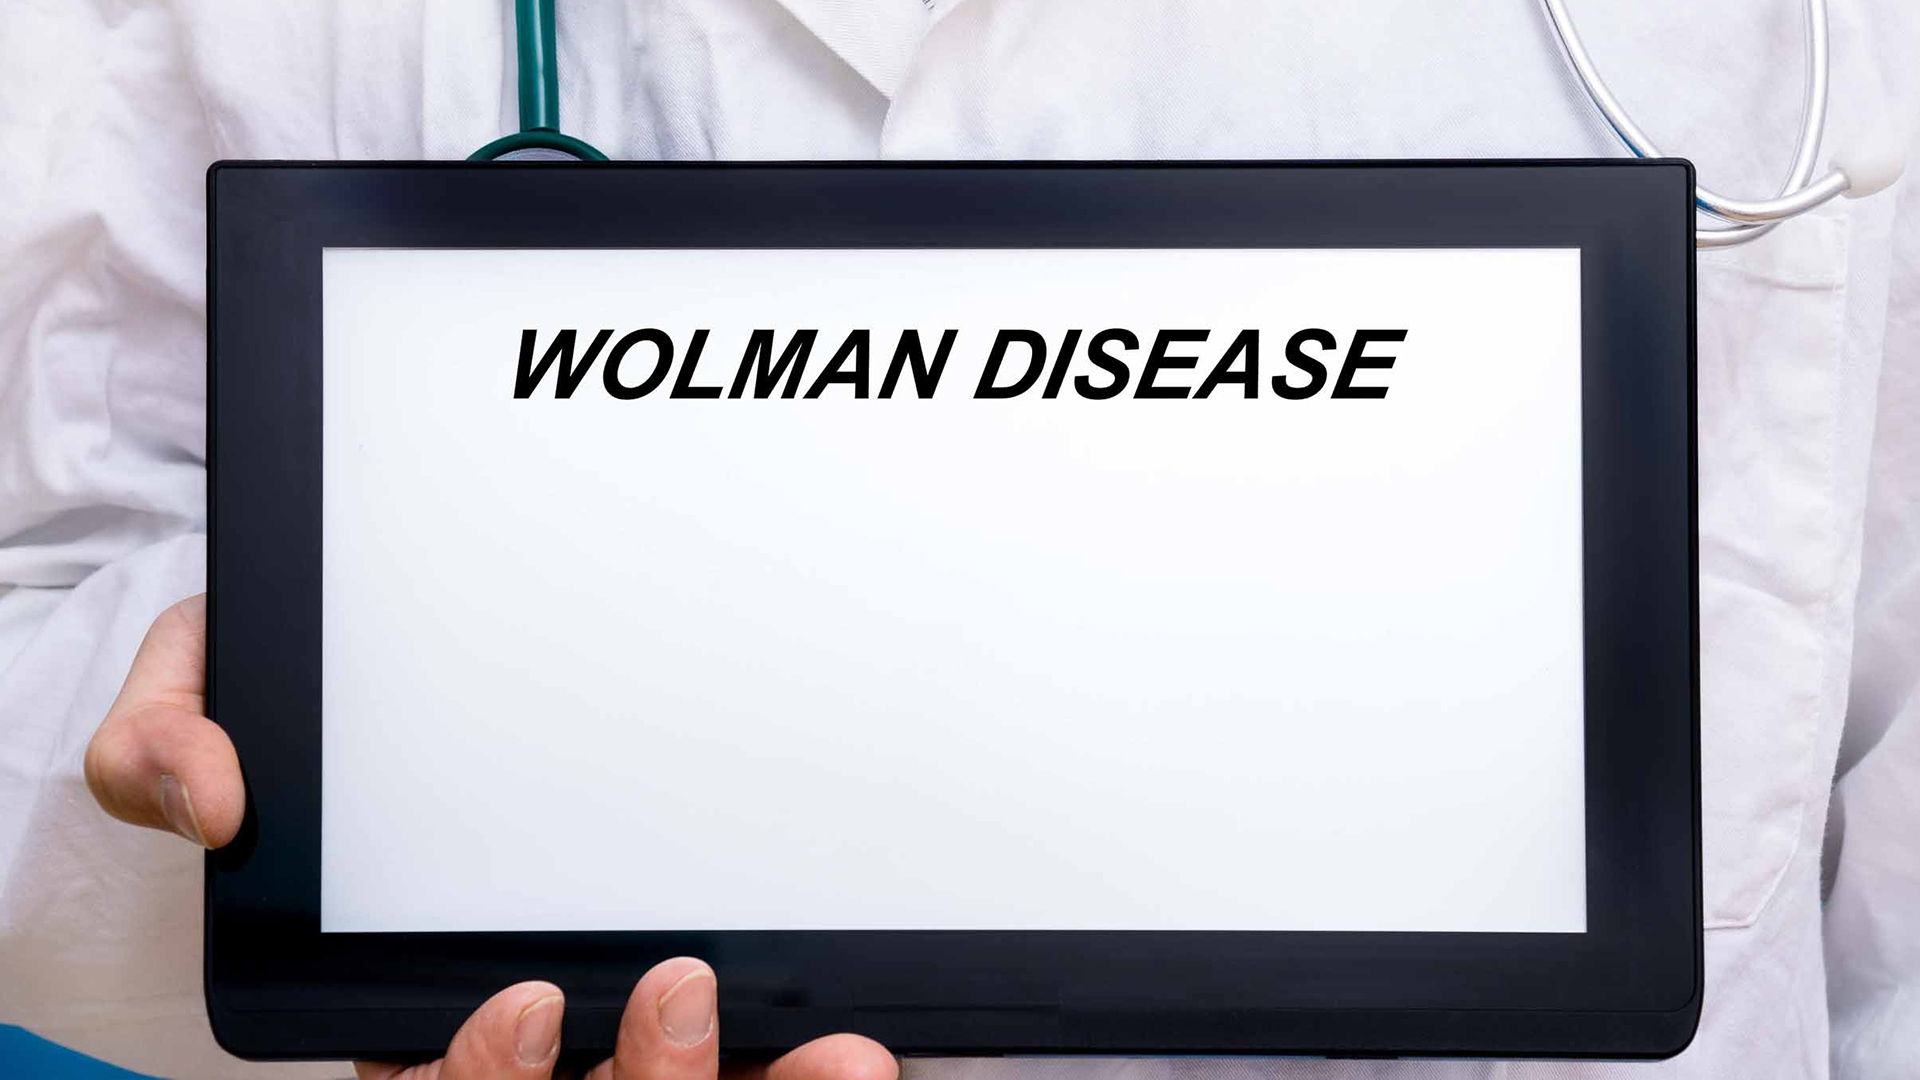 Wolman disease